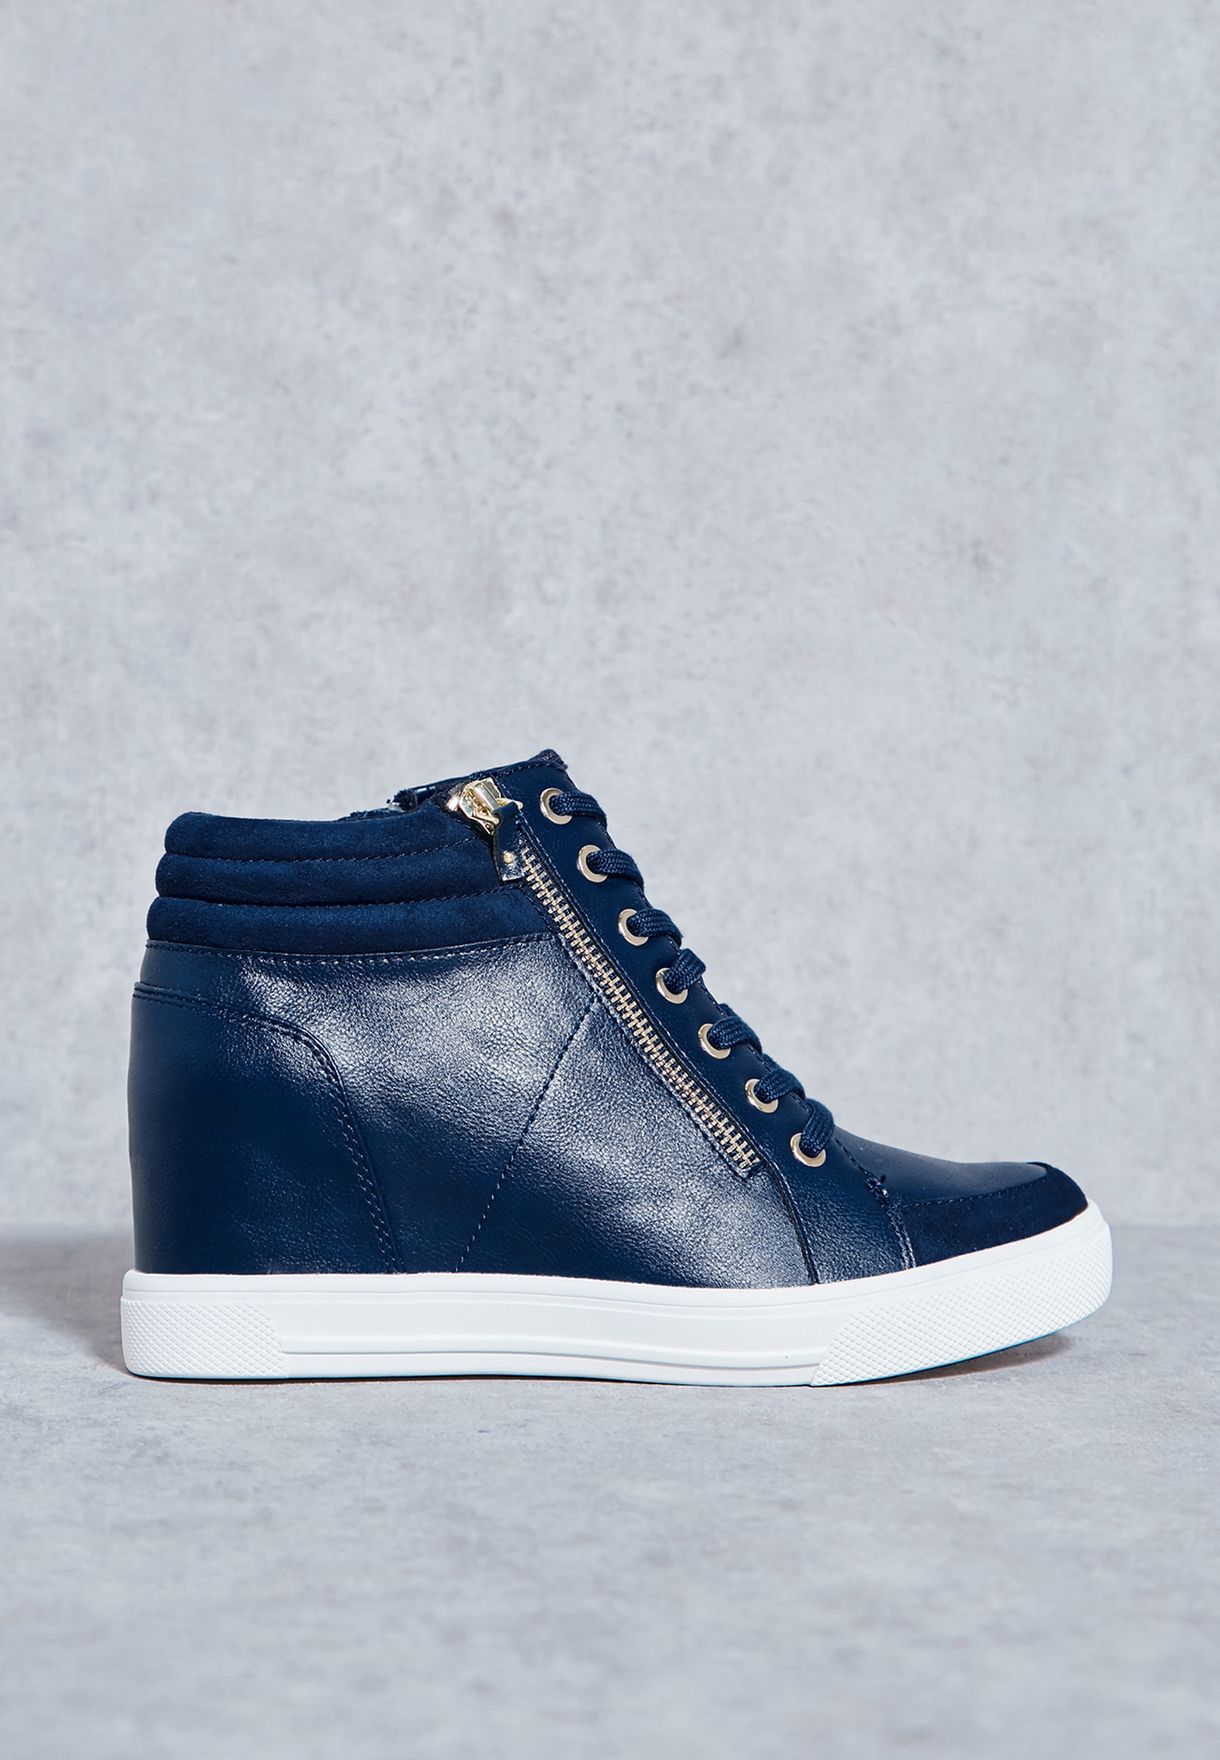 navy blue wedge sneakers